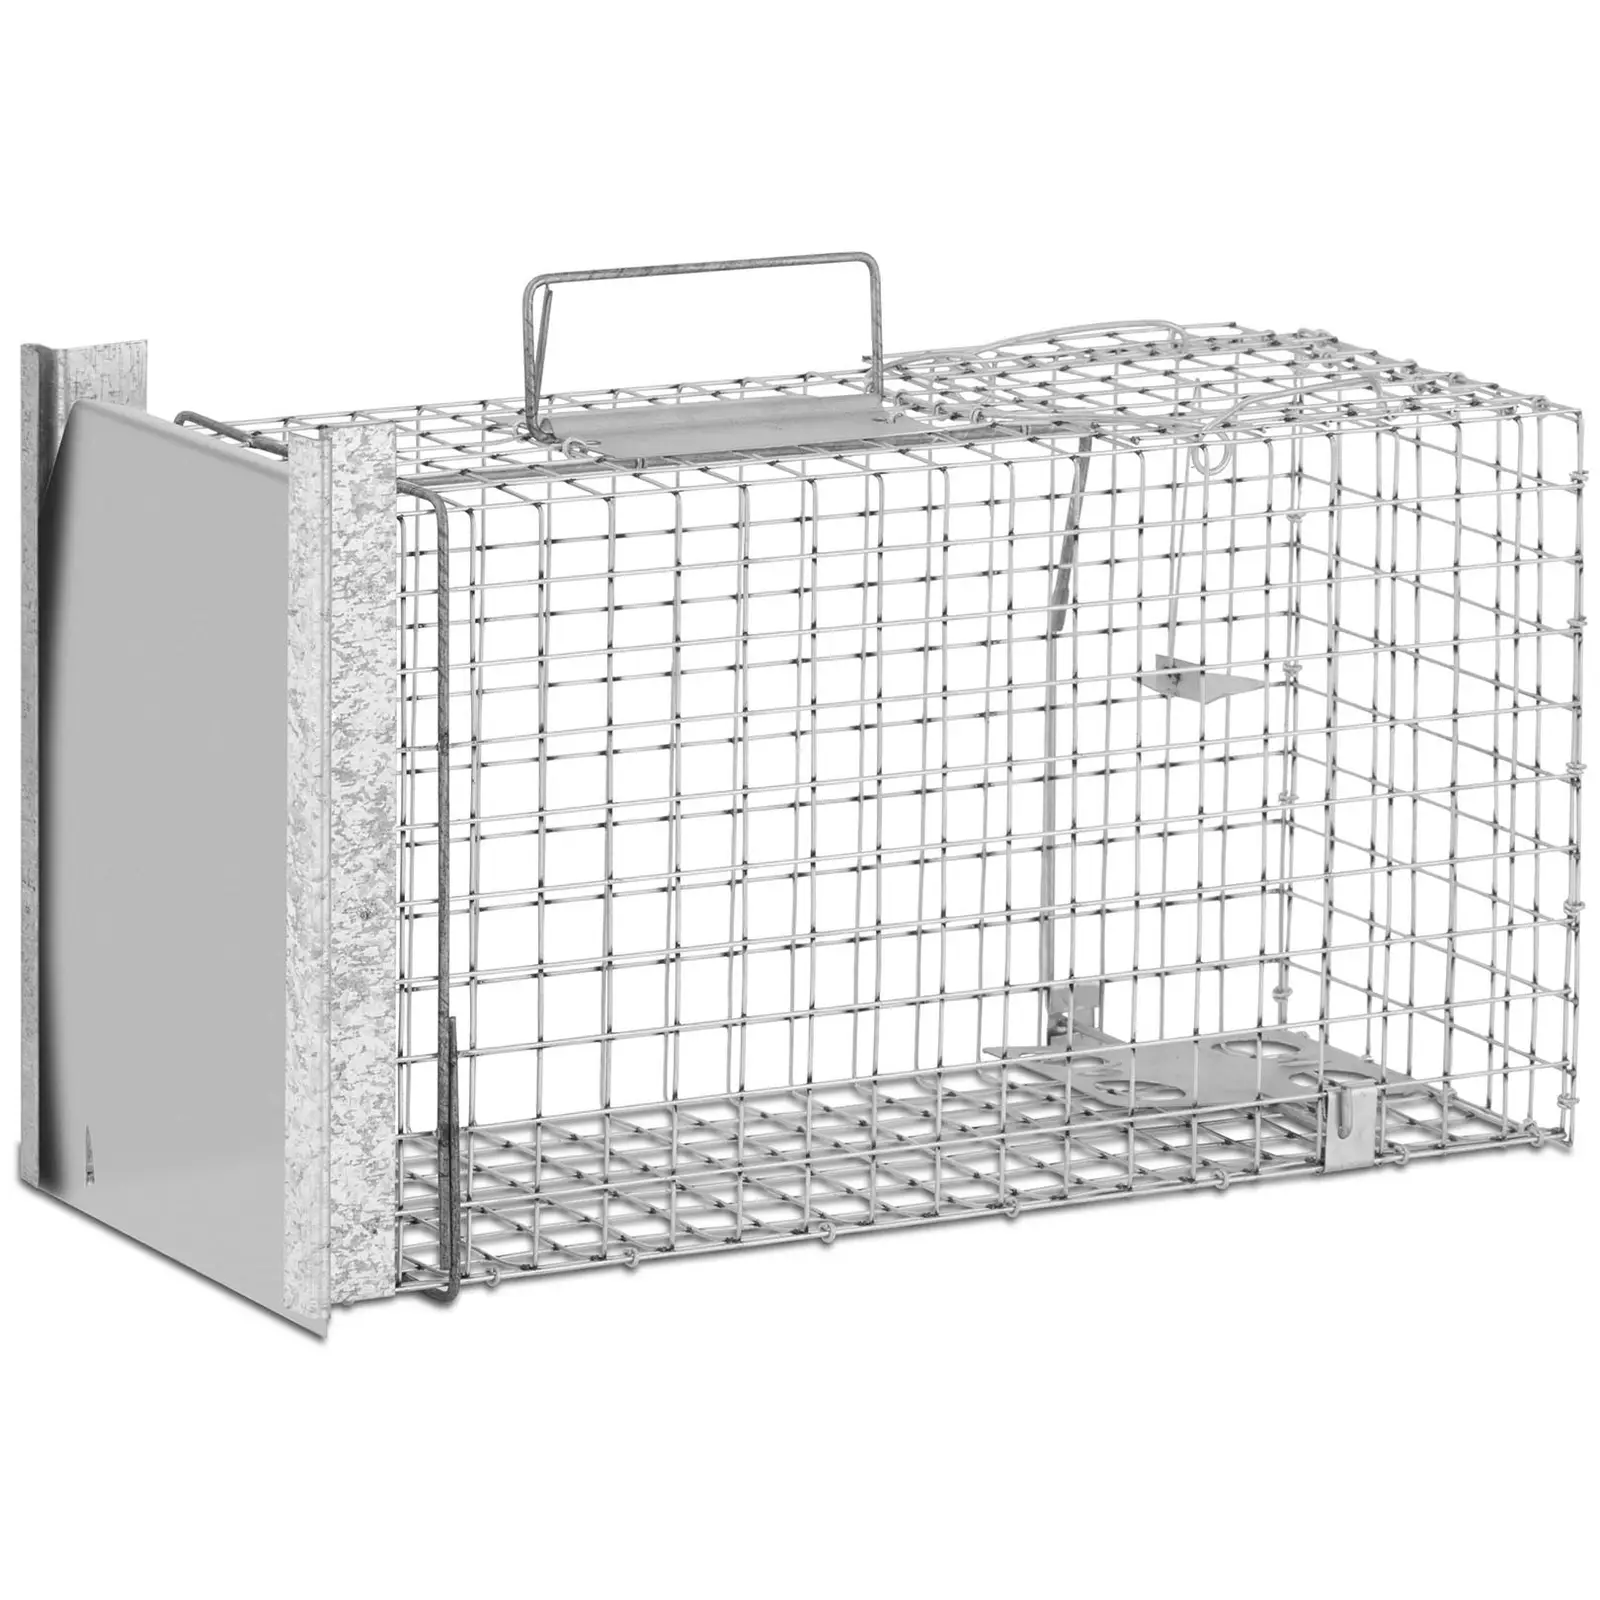 Trappola per animali - 500 x 200 x 270 mm - Dimensione grata: 25 x 25 mm